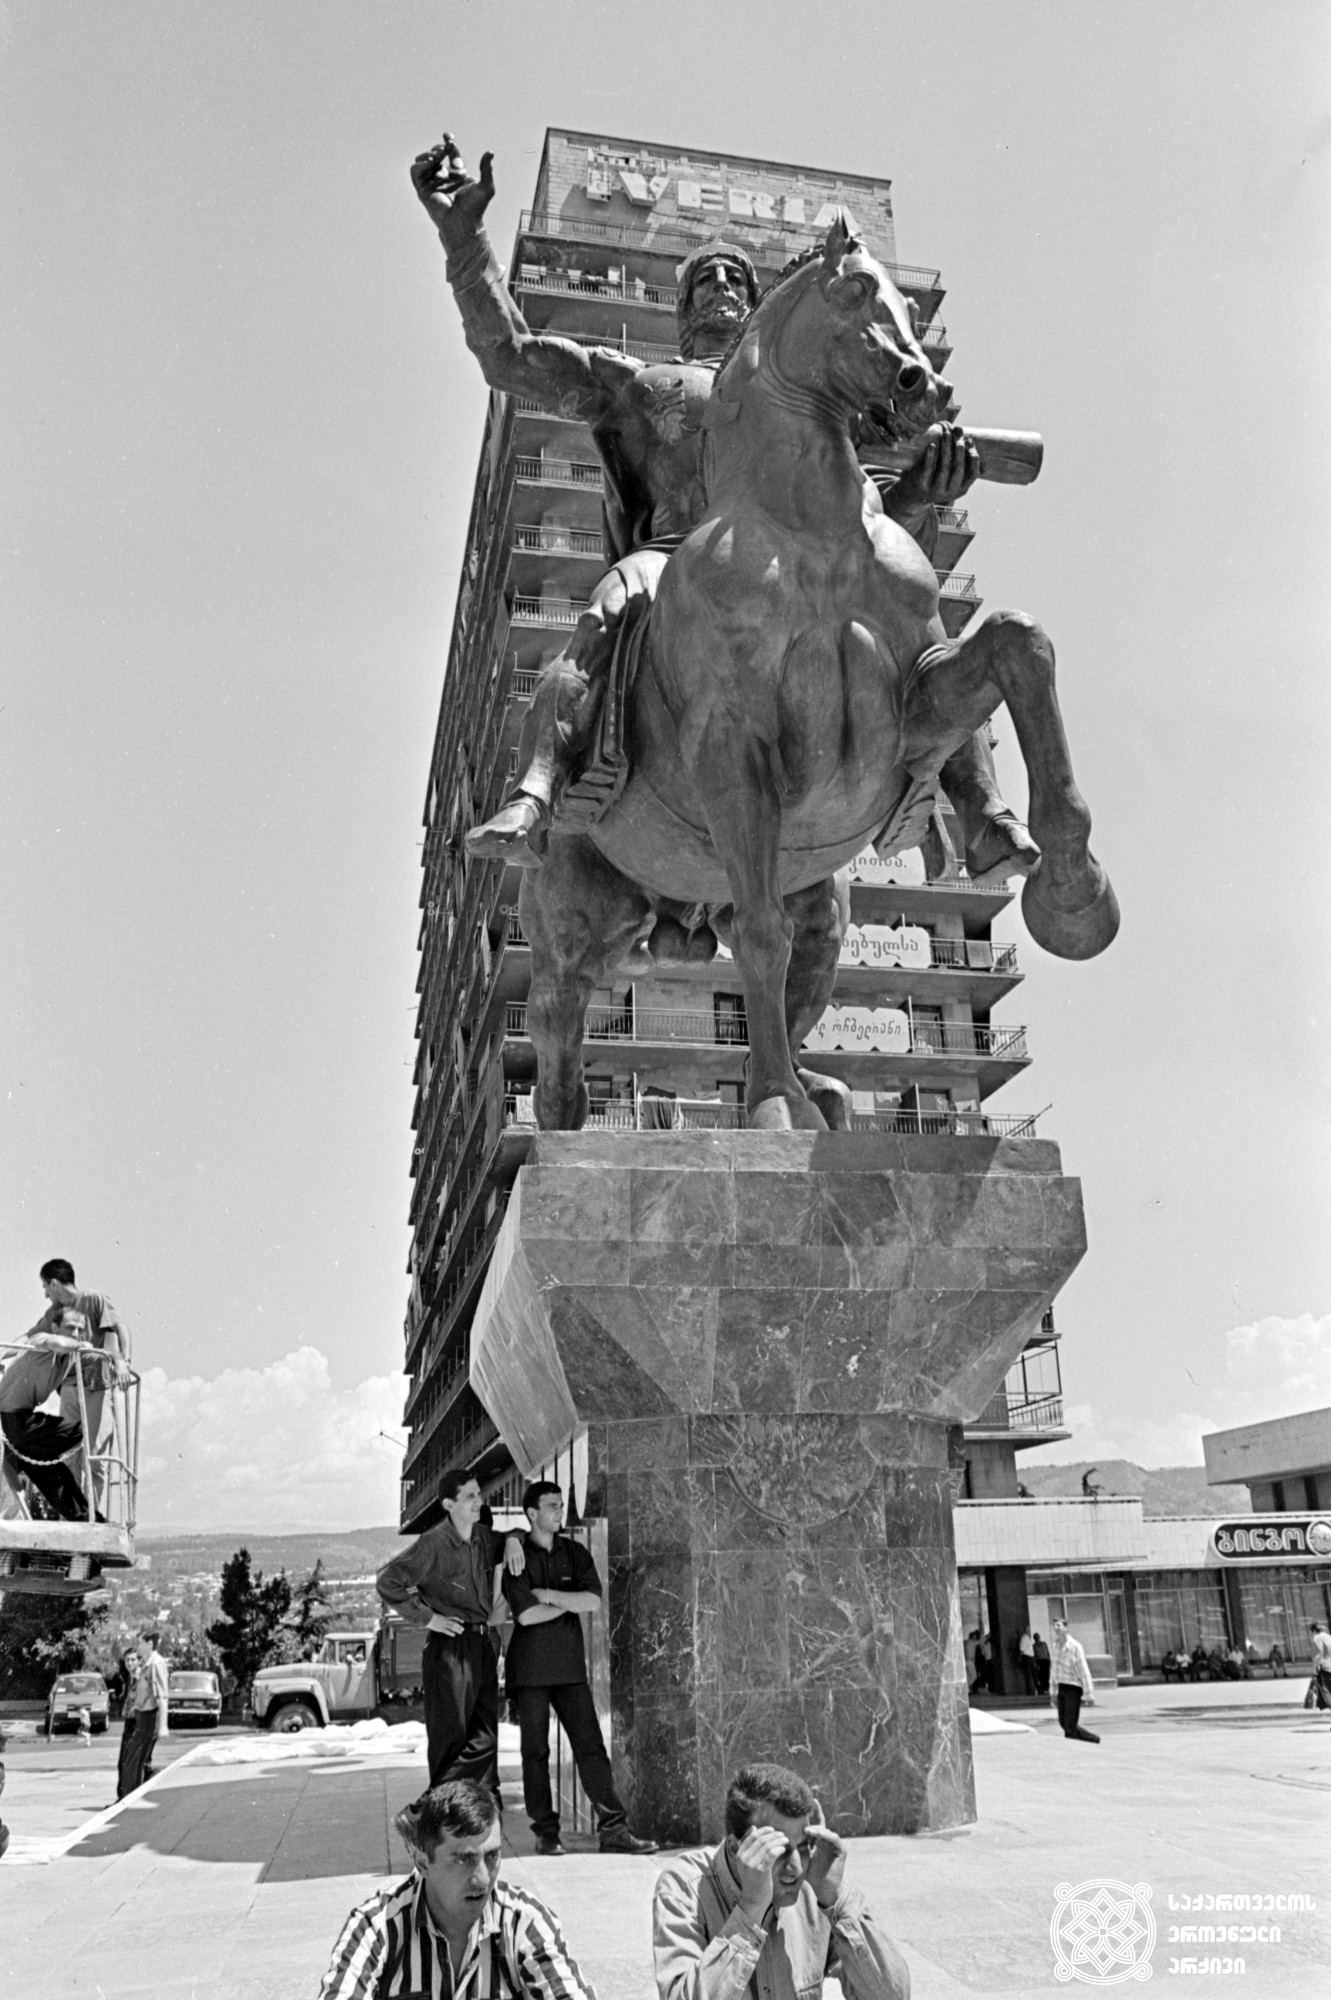 დავით აღმაშენებლის ძეგლი რესპუბლიკის მოედანზე (დღევანდელი ვარდების რევოლუციის მოედანი). თბილისი. 
<br> საქინფორმის ფოტოქრონიკა. ფოტო: გოგი ცაგარელი. <br>1997. <br>

Davit Aghmashenebeli monument on the Republic Square (today Rose Revolution Square). Tbilisi. <br> Sakinformi's Photography Division. Photo by Gogi Tsagareli. <br> 1997.